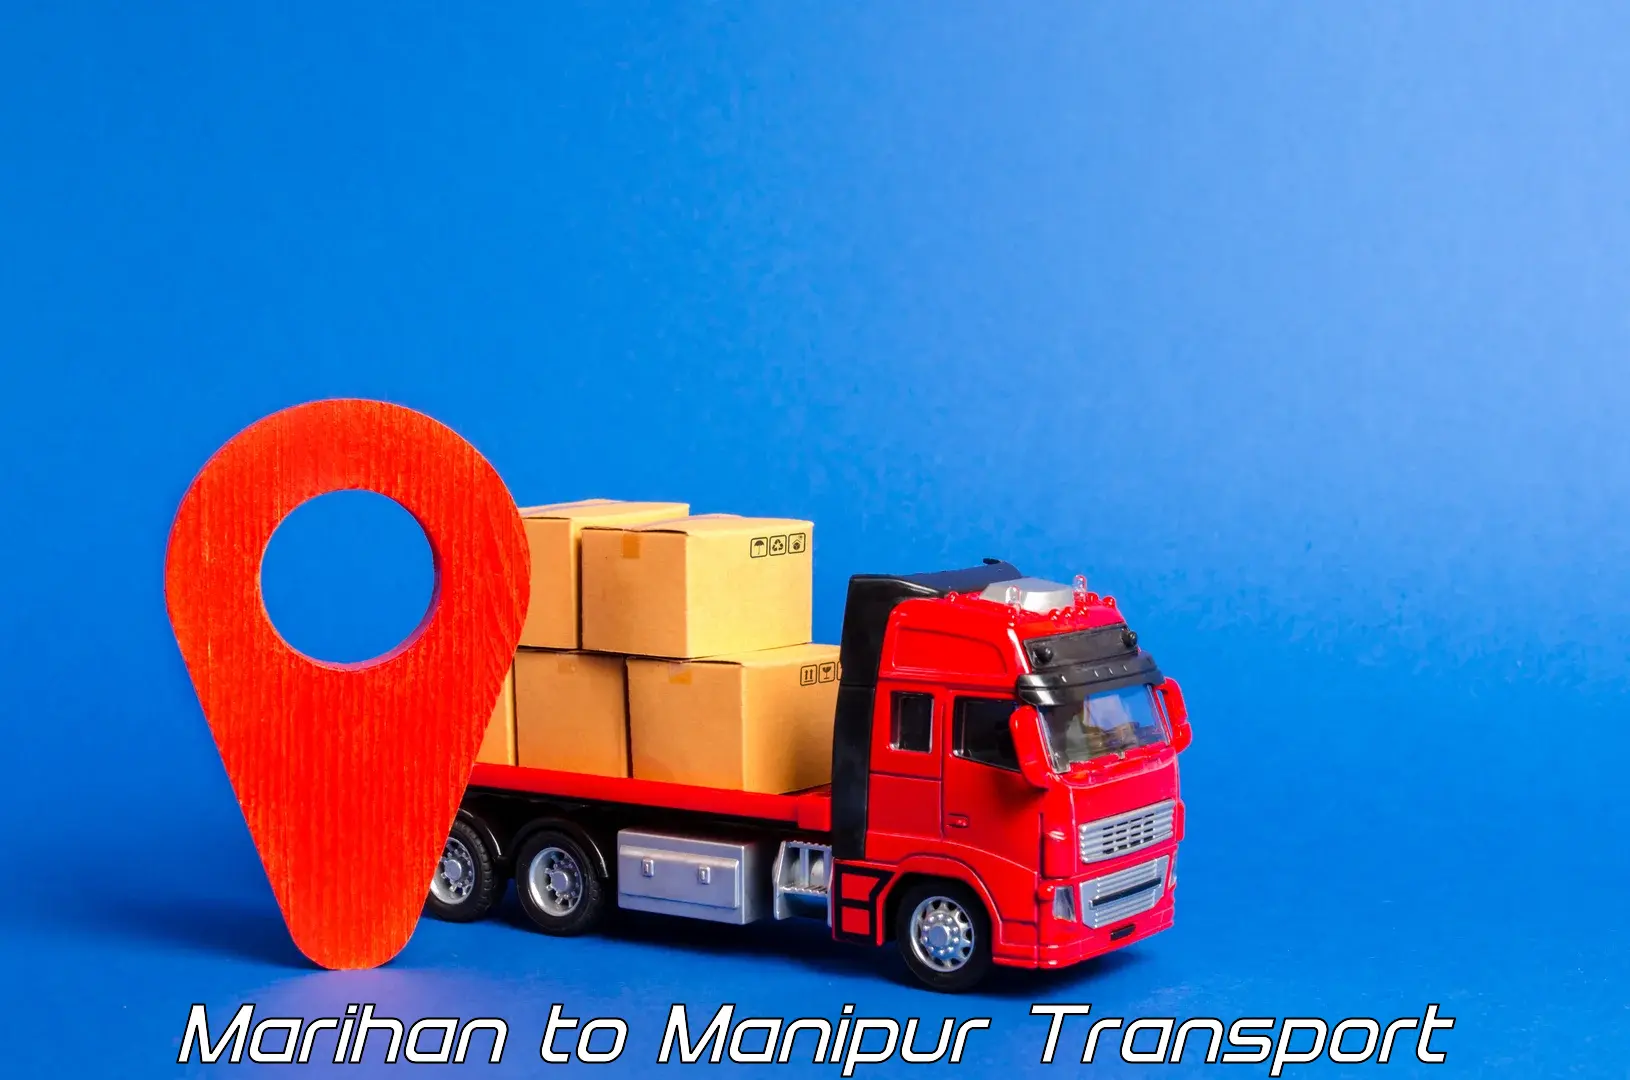 Vehicle transport services Marihan to Senapati